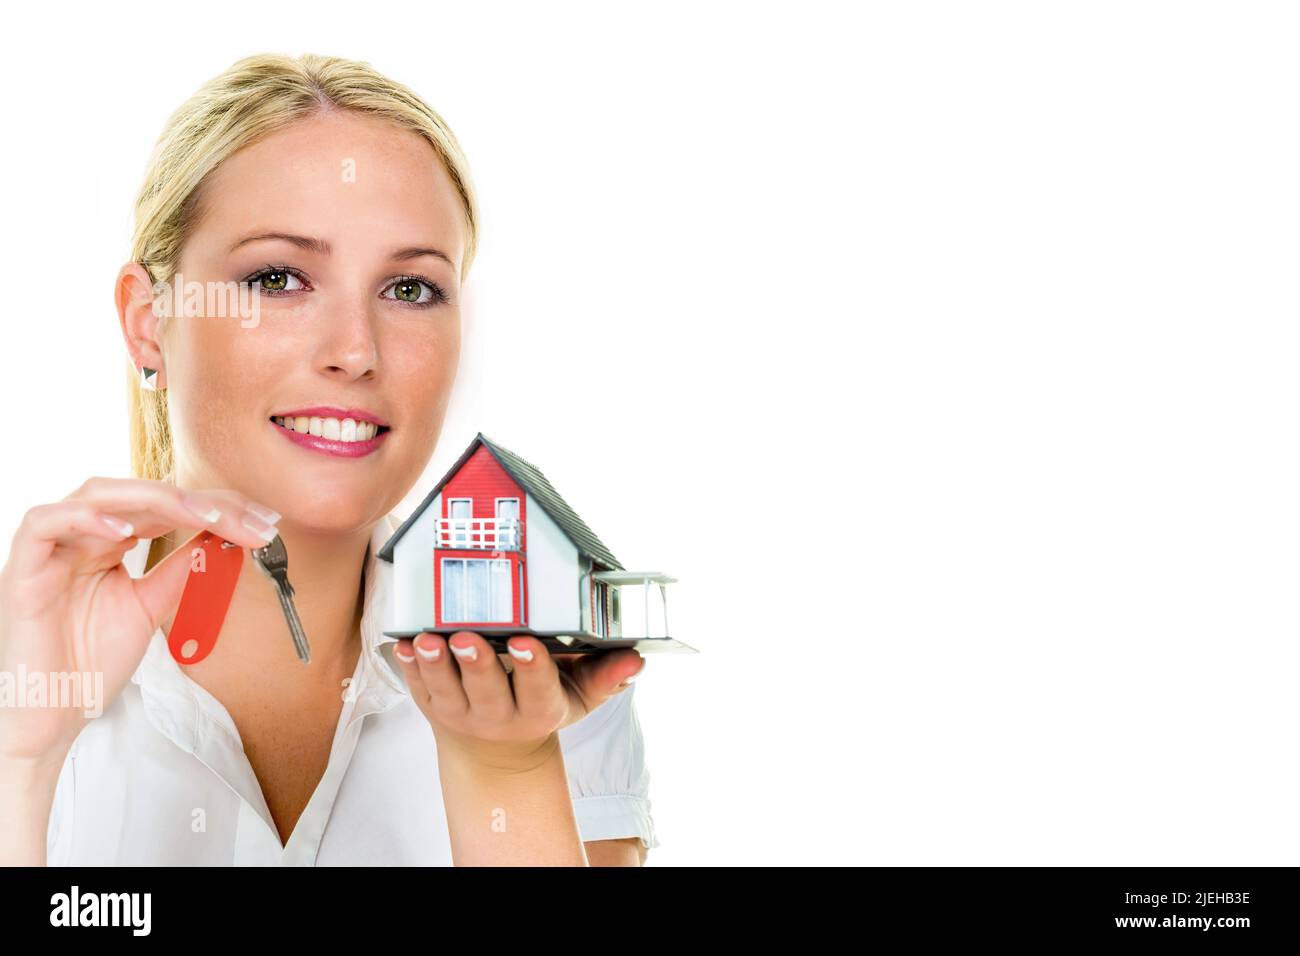 Eine Frau beschützt Ihr Haus und Eigenheim. Versicherung und seriöse Finanzierung Beruhigen. Foto Stock